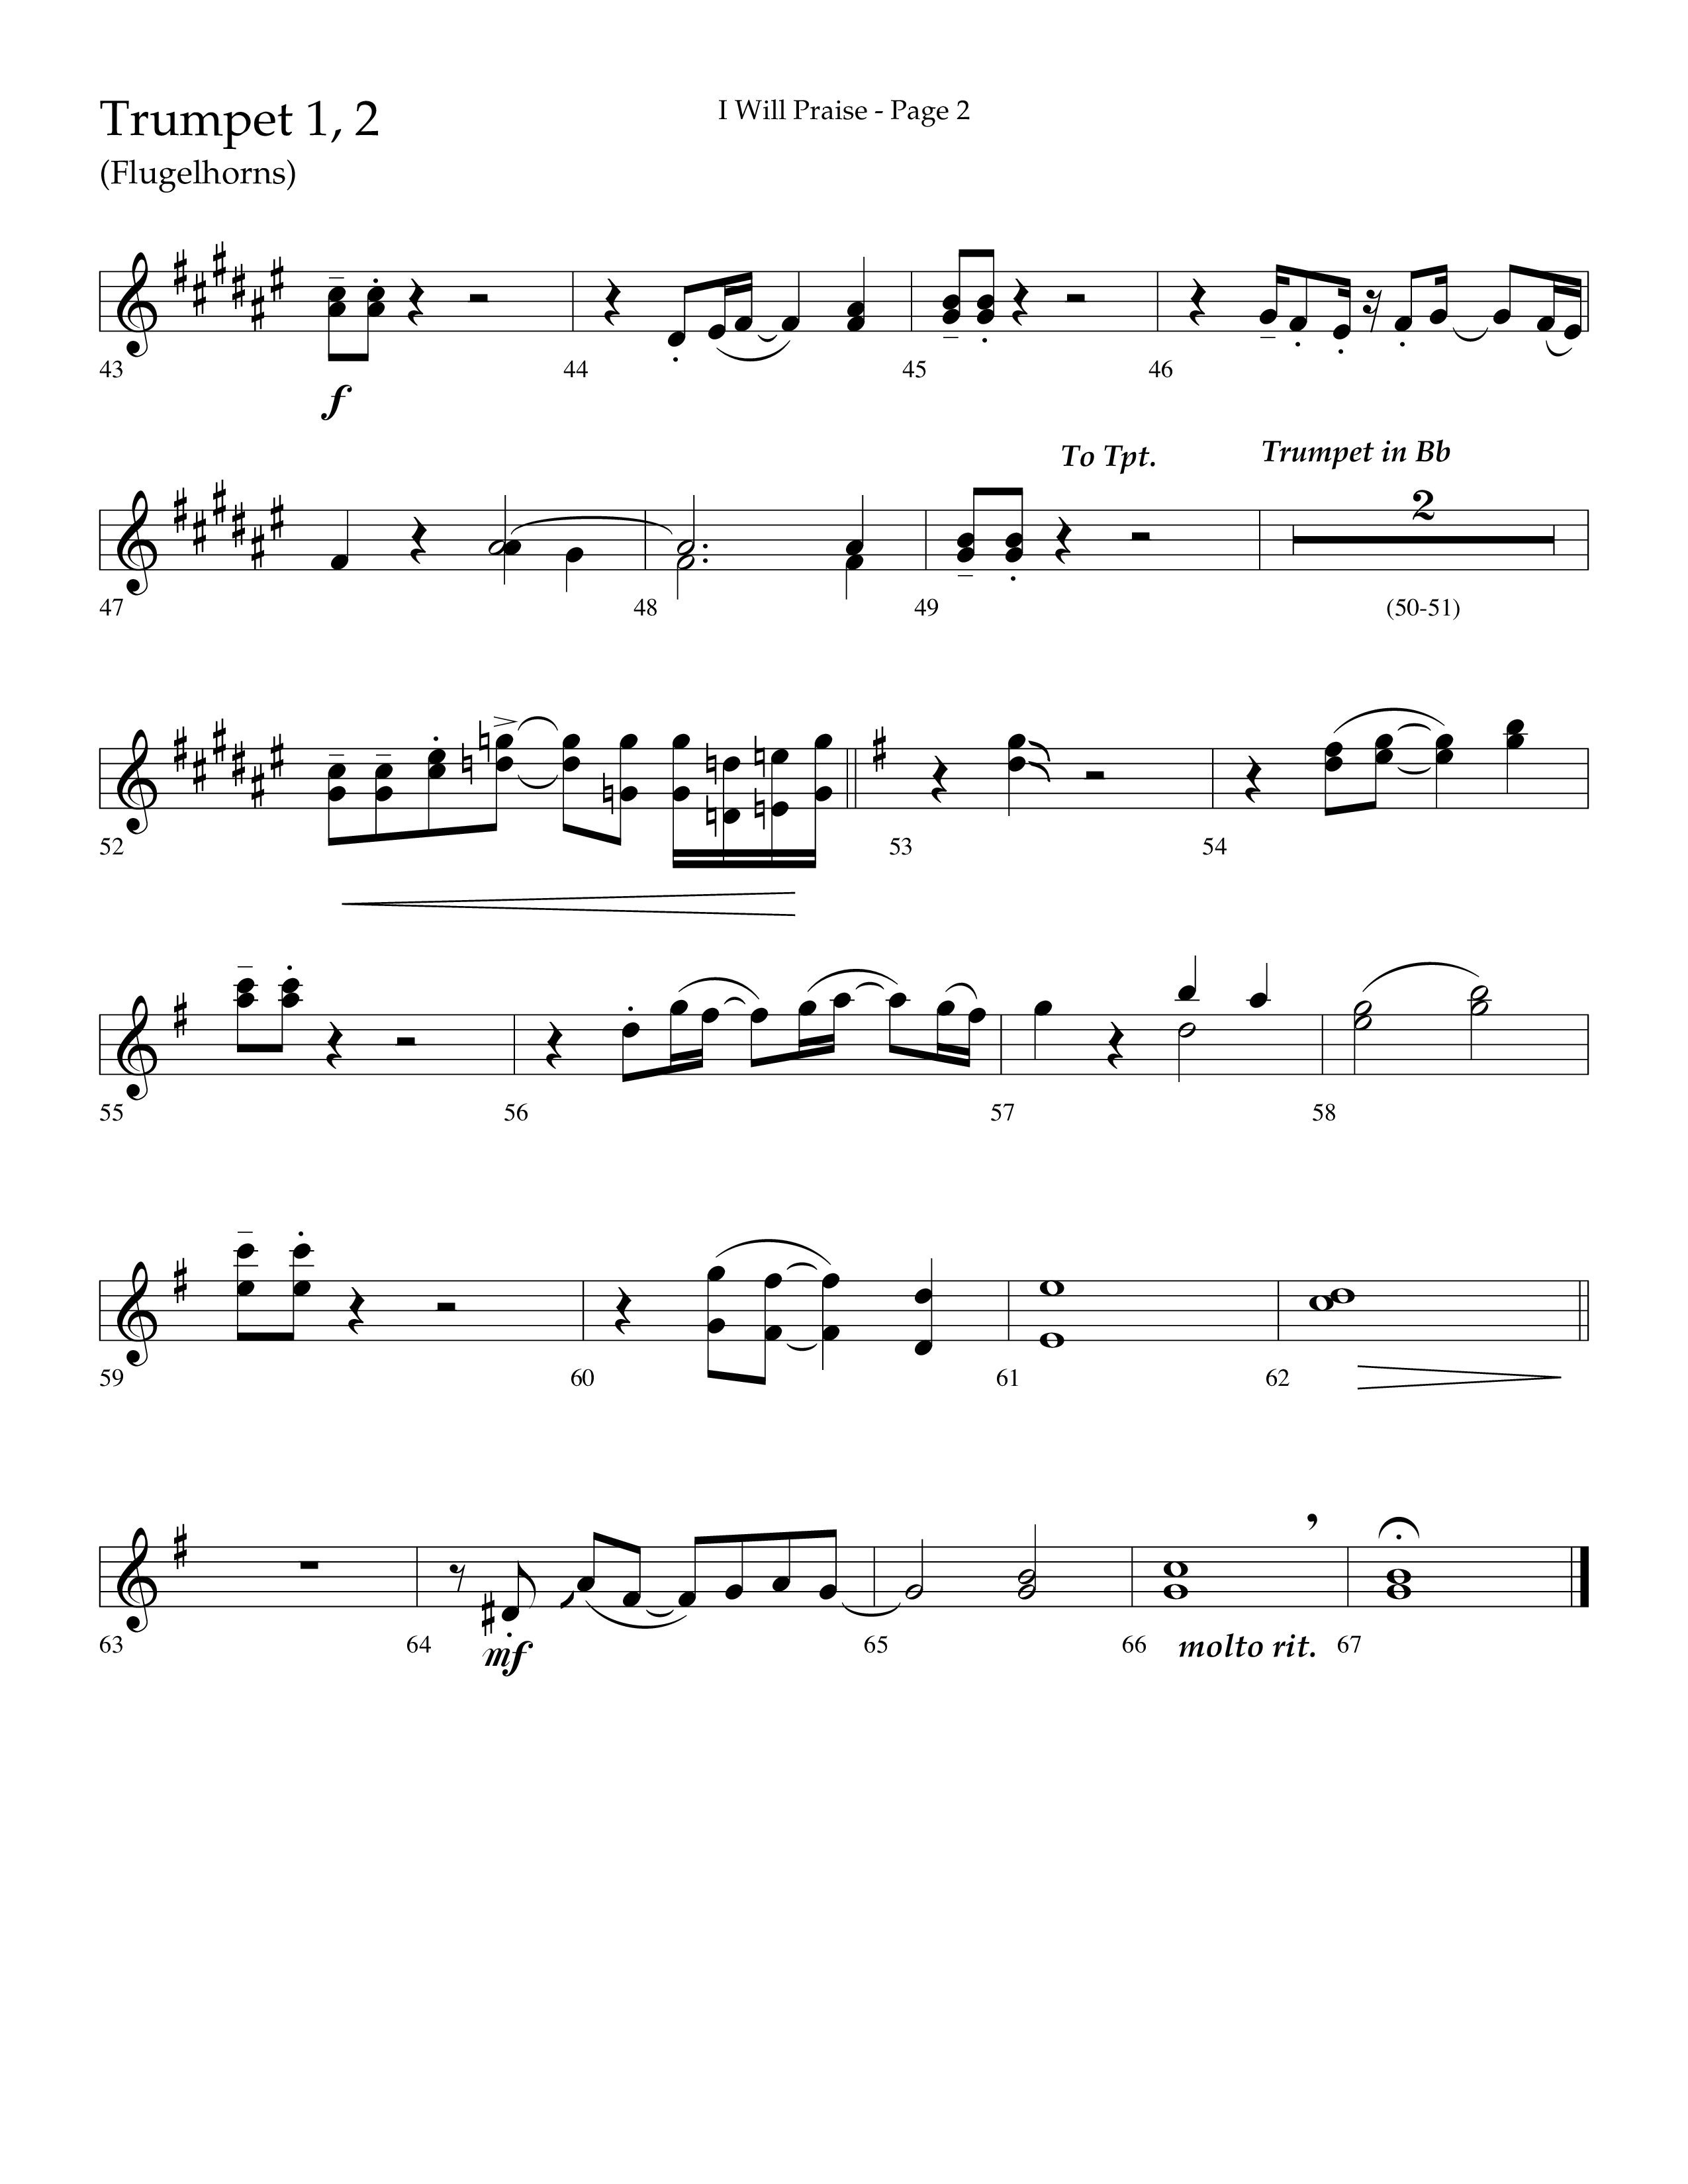 I Will Praise (Choral Anthem SATB) Trumpet 1,2 (Lifeway Choral / Arr. Mark Willard / Orch. Stephen K. Hand)